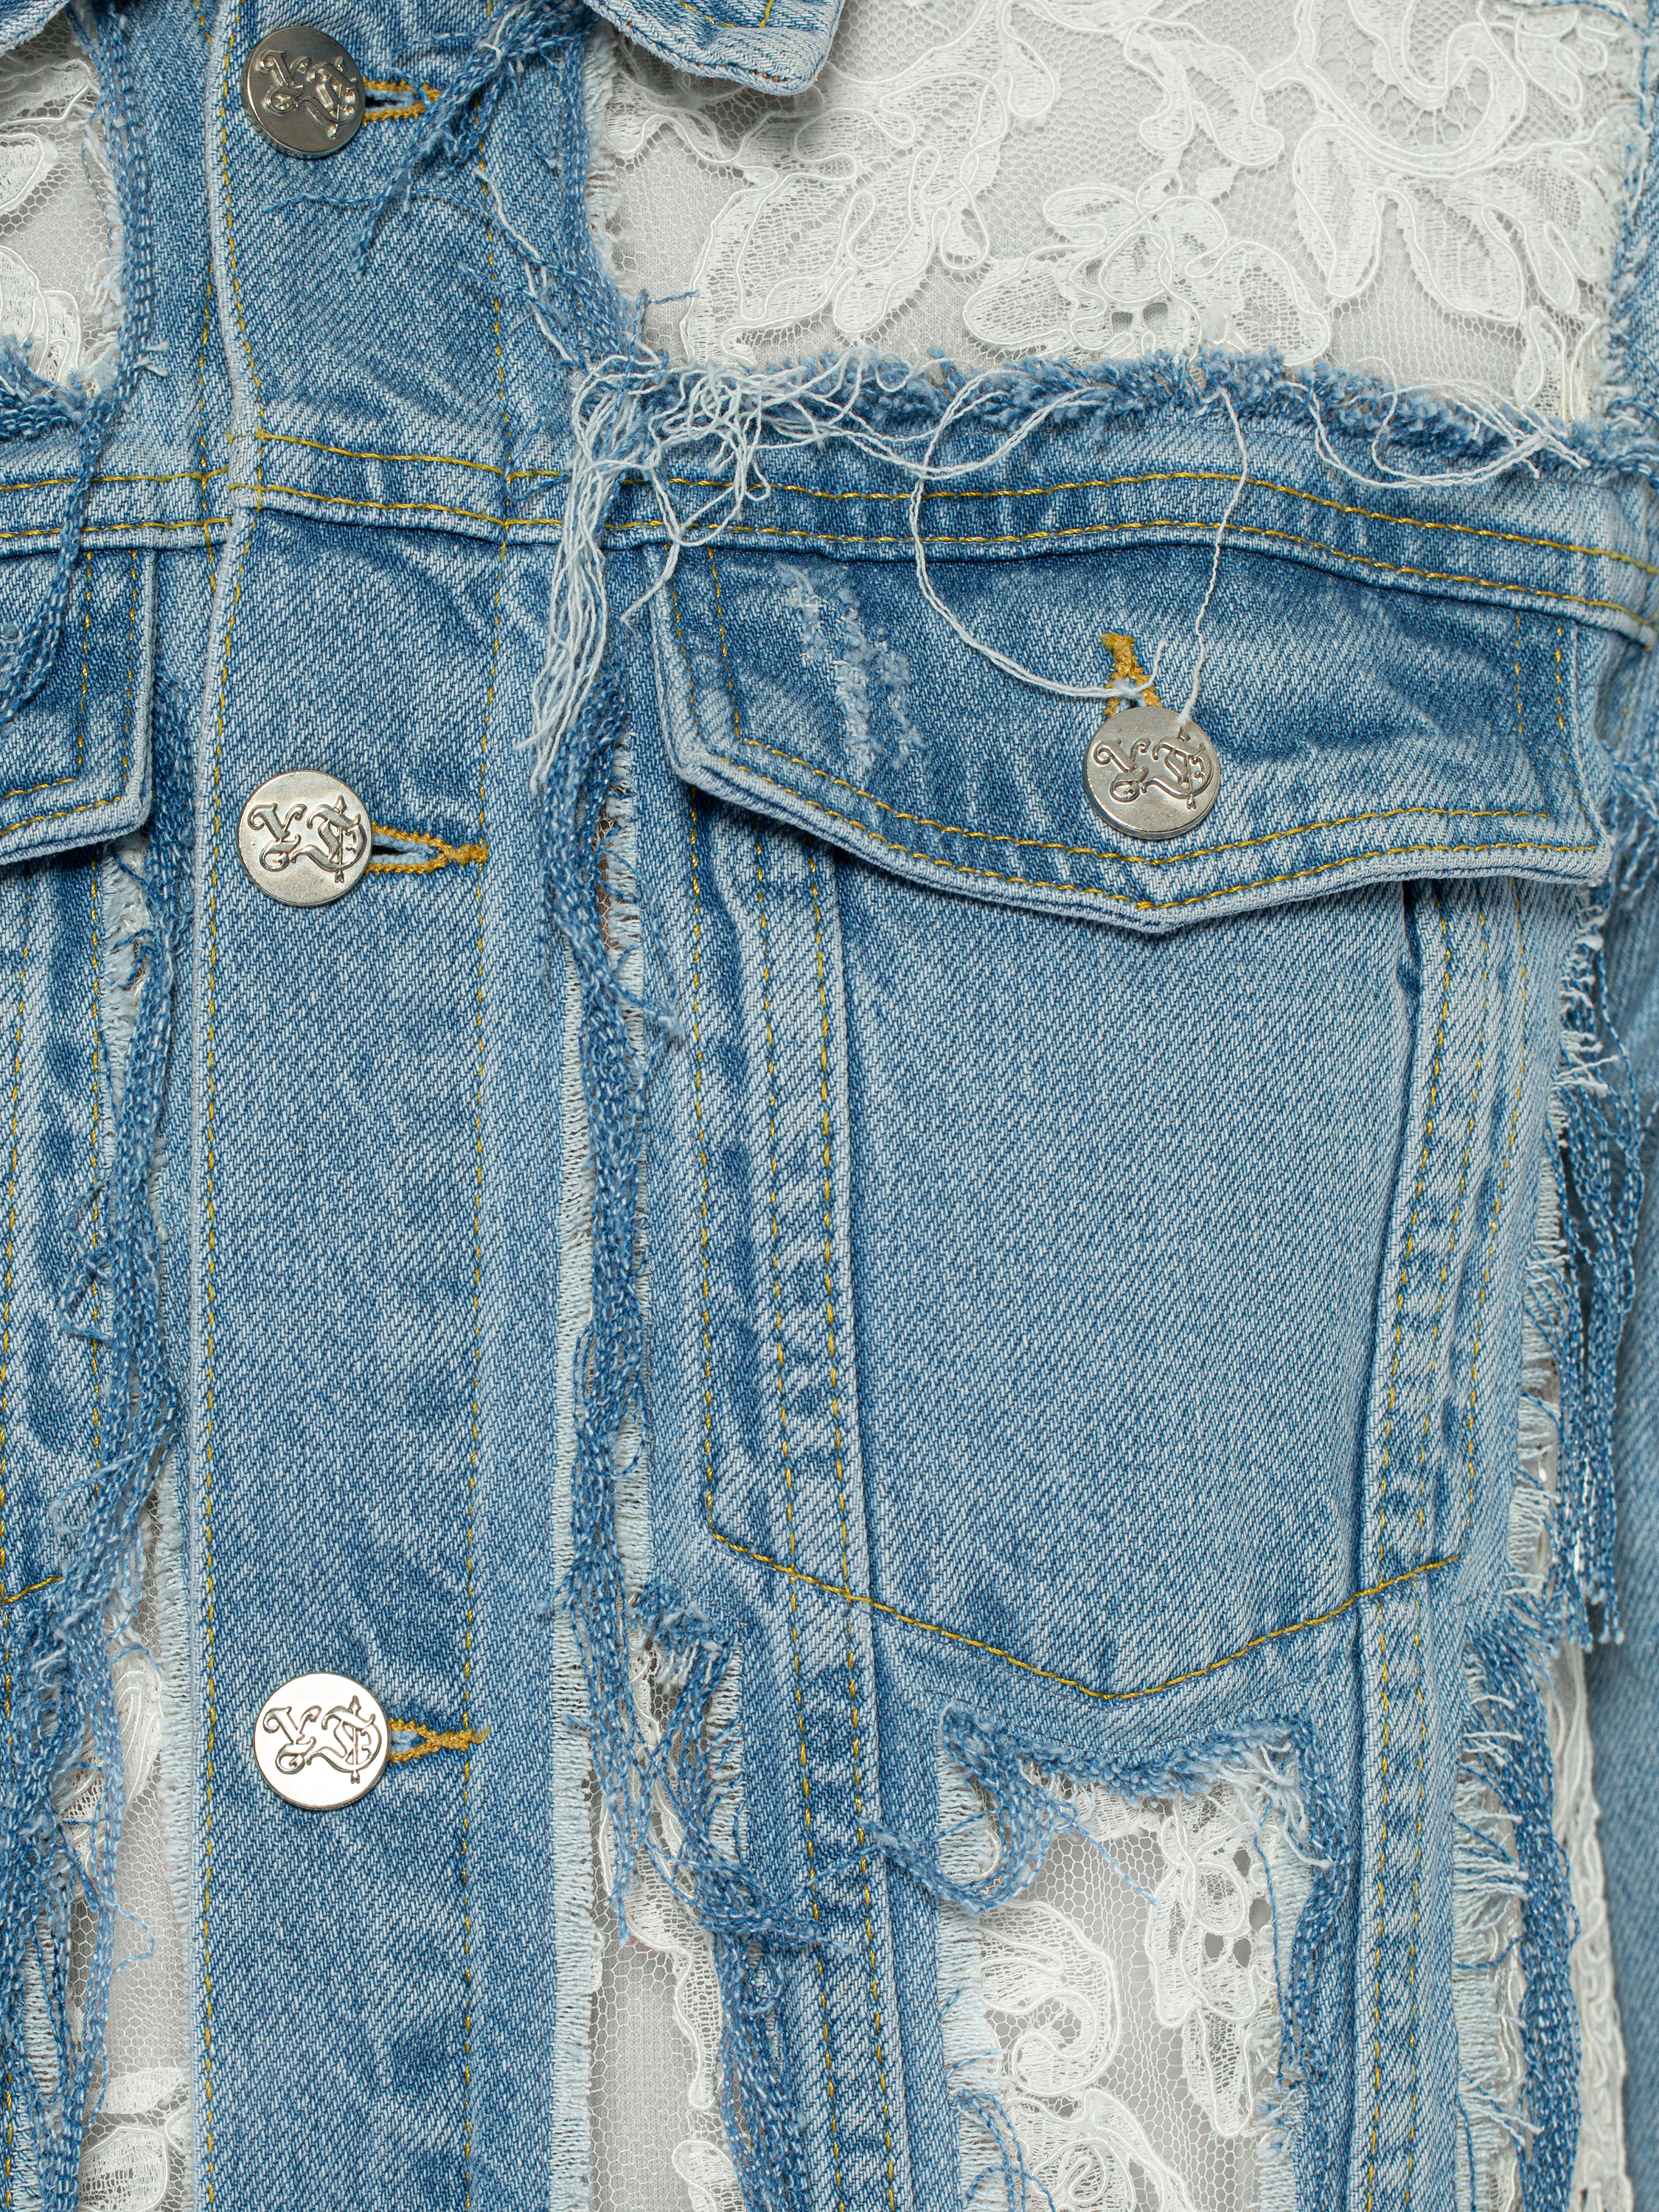 Женская джинсовая куртка с кружевом и жемчугом эффектная модная